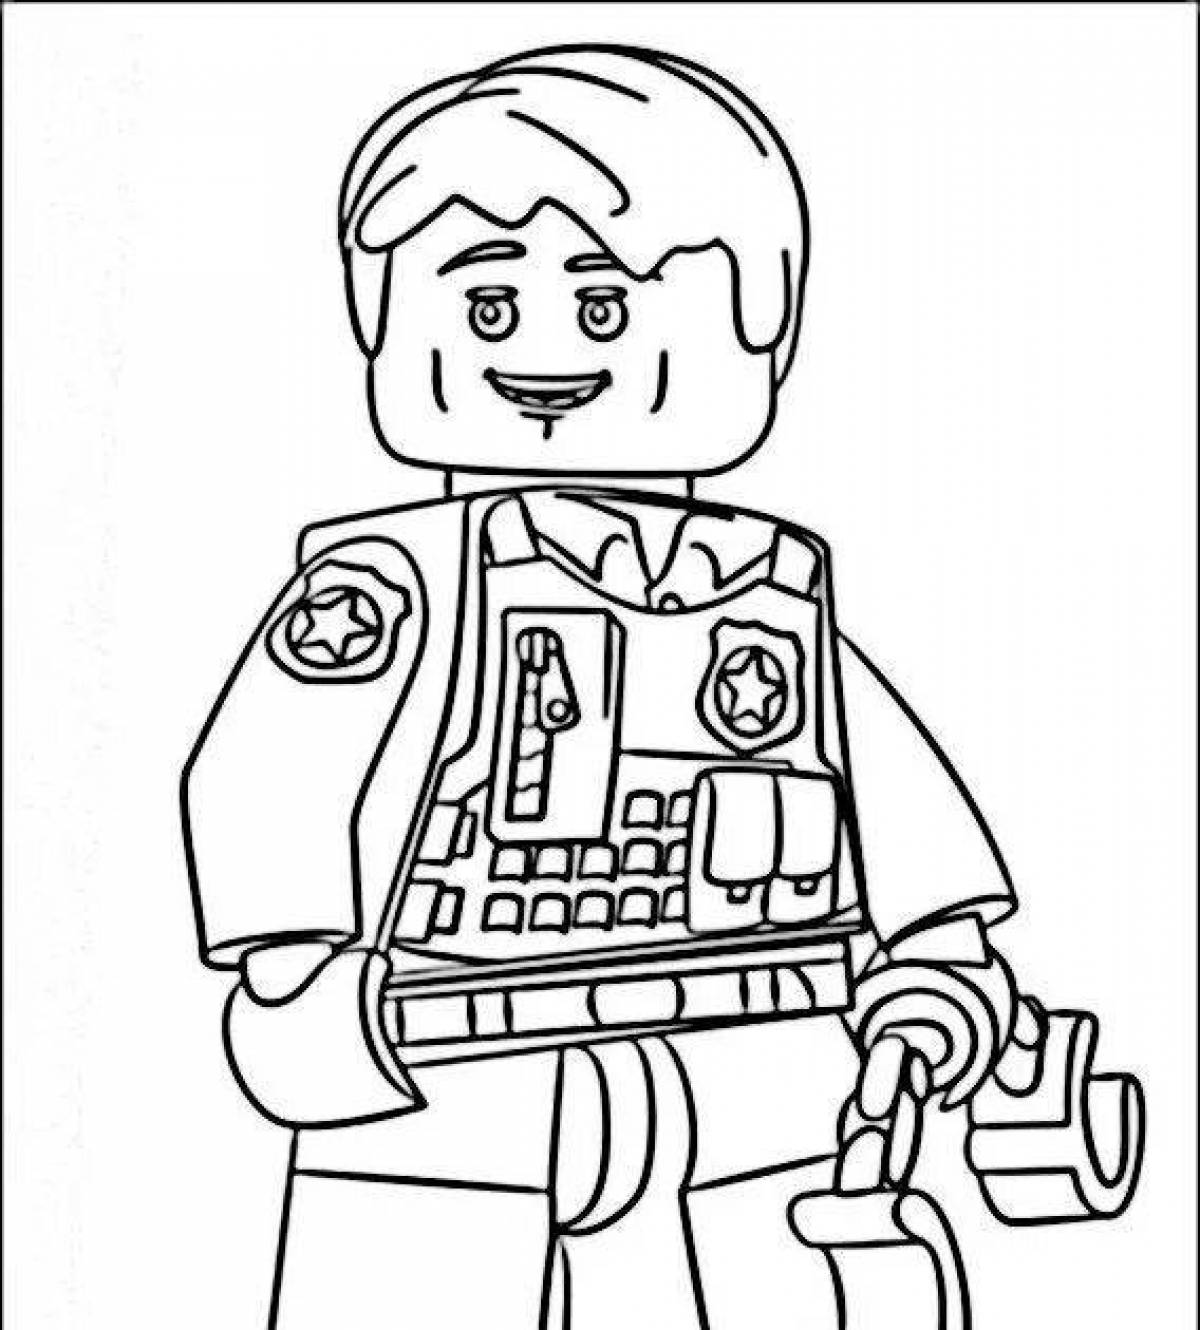 Lego city police fun coloring book